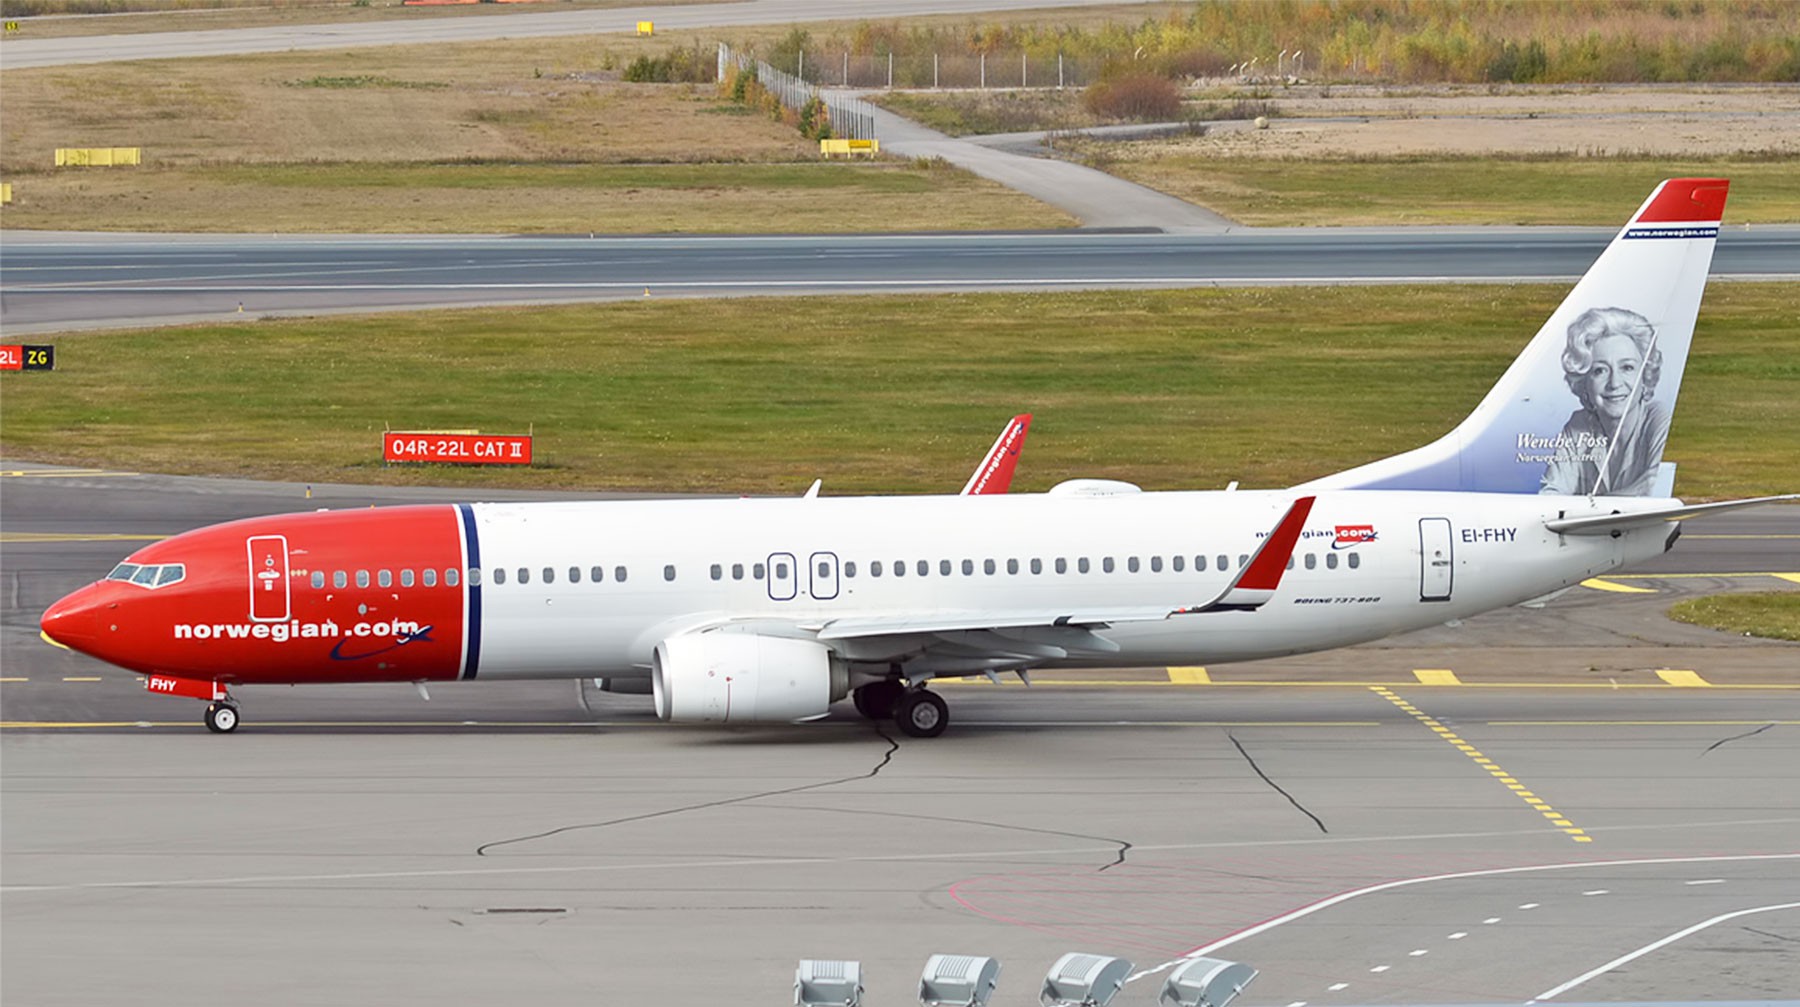 Dailystorm - Boeing 737 MAX 8 компании Norwegian развернулся и возвращается в Стокгольм